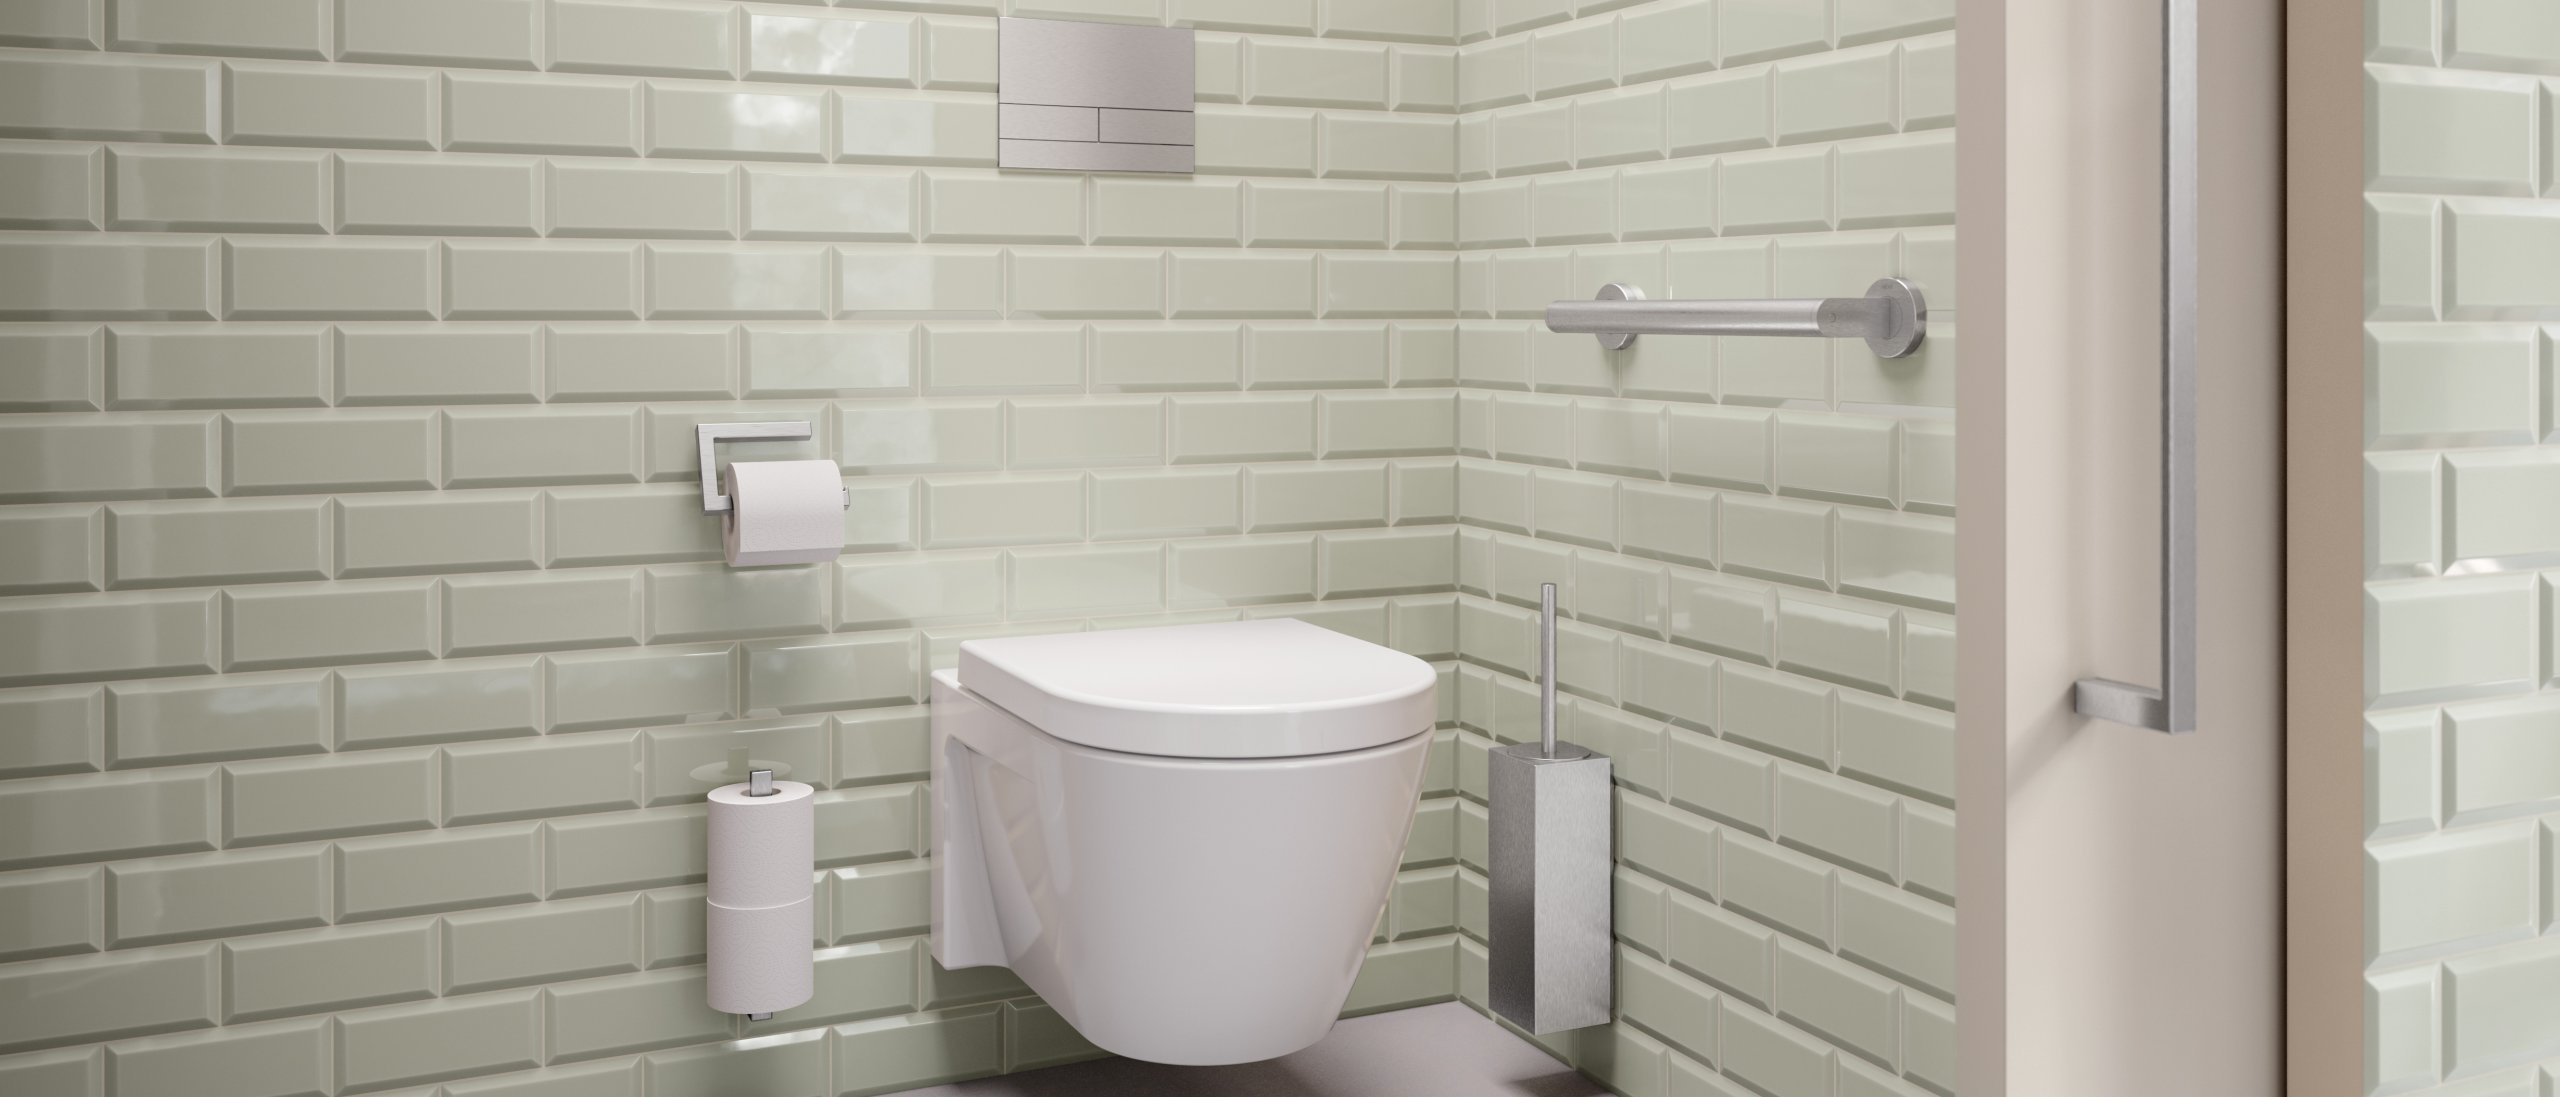 WC-Bereich ausgestattet mit WC-Bürstenhalter, Toilettenpapierhalter und Haltegriff in Edelstahl matt